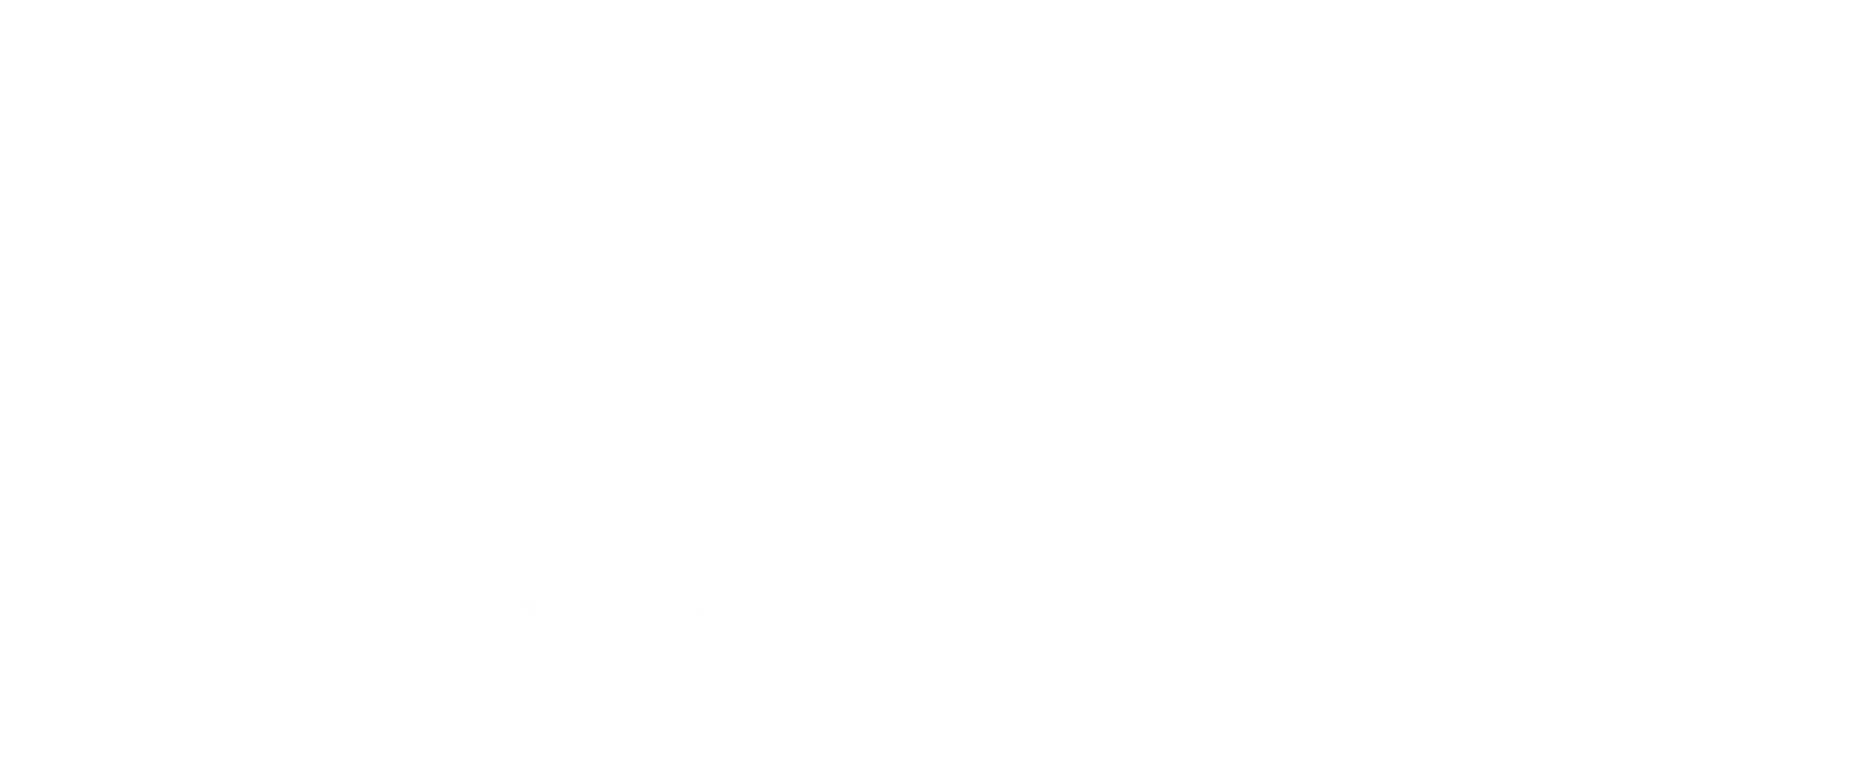 Calvary Monrovia